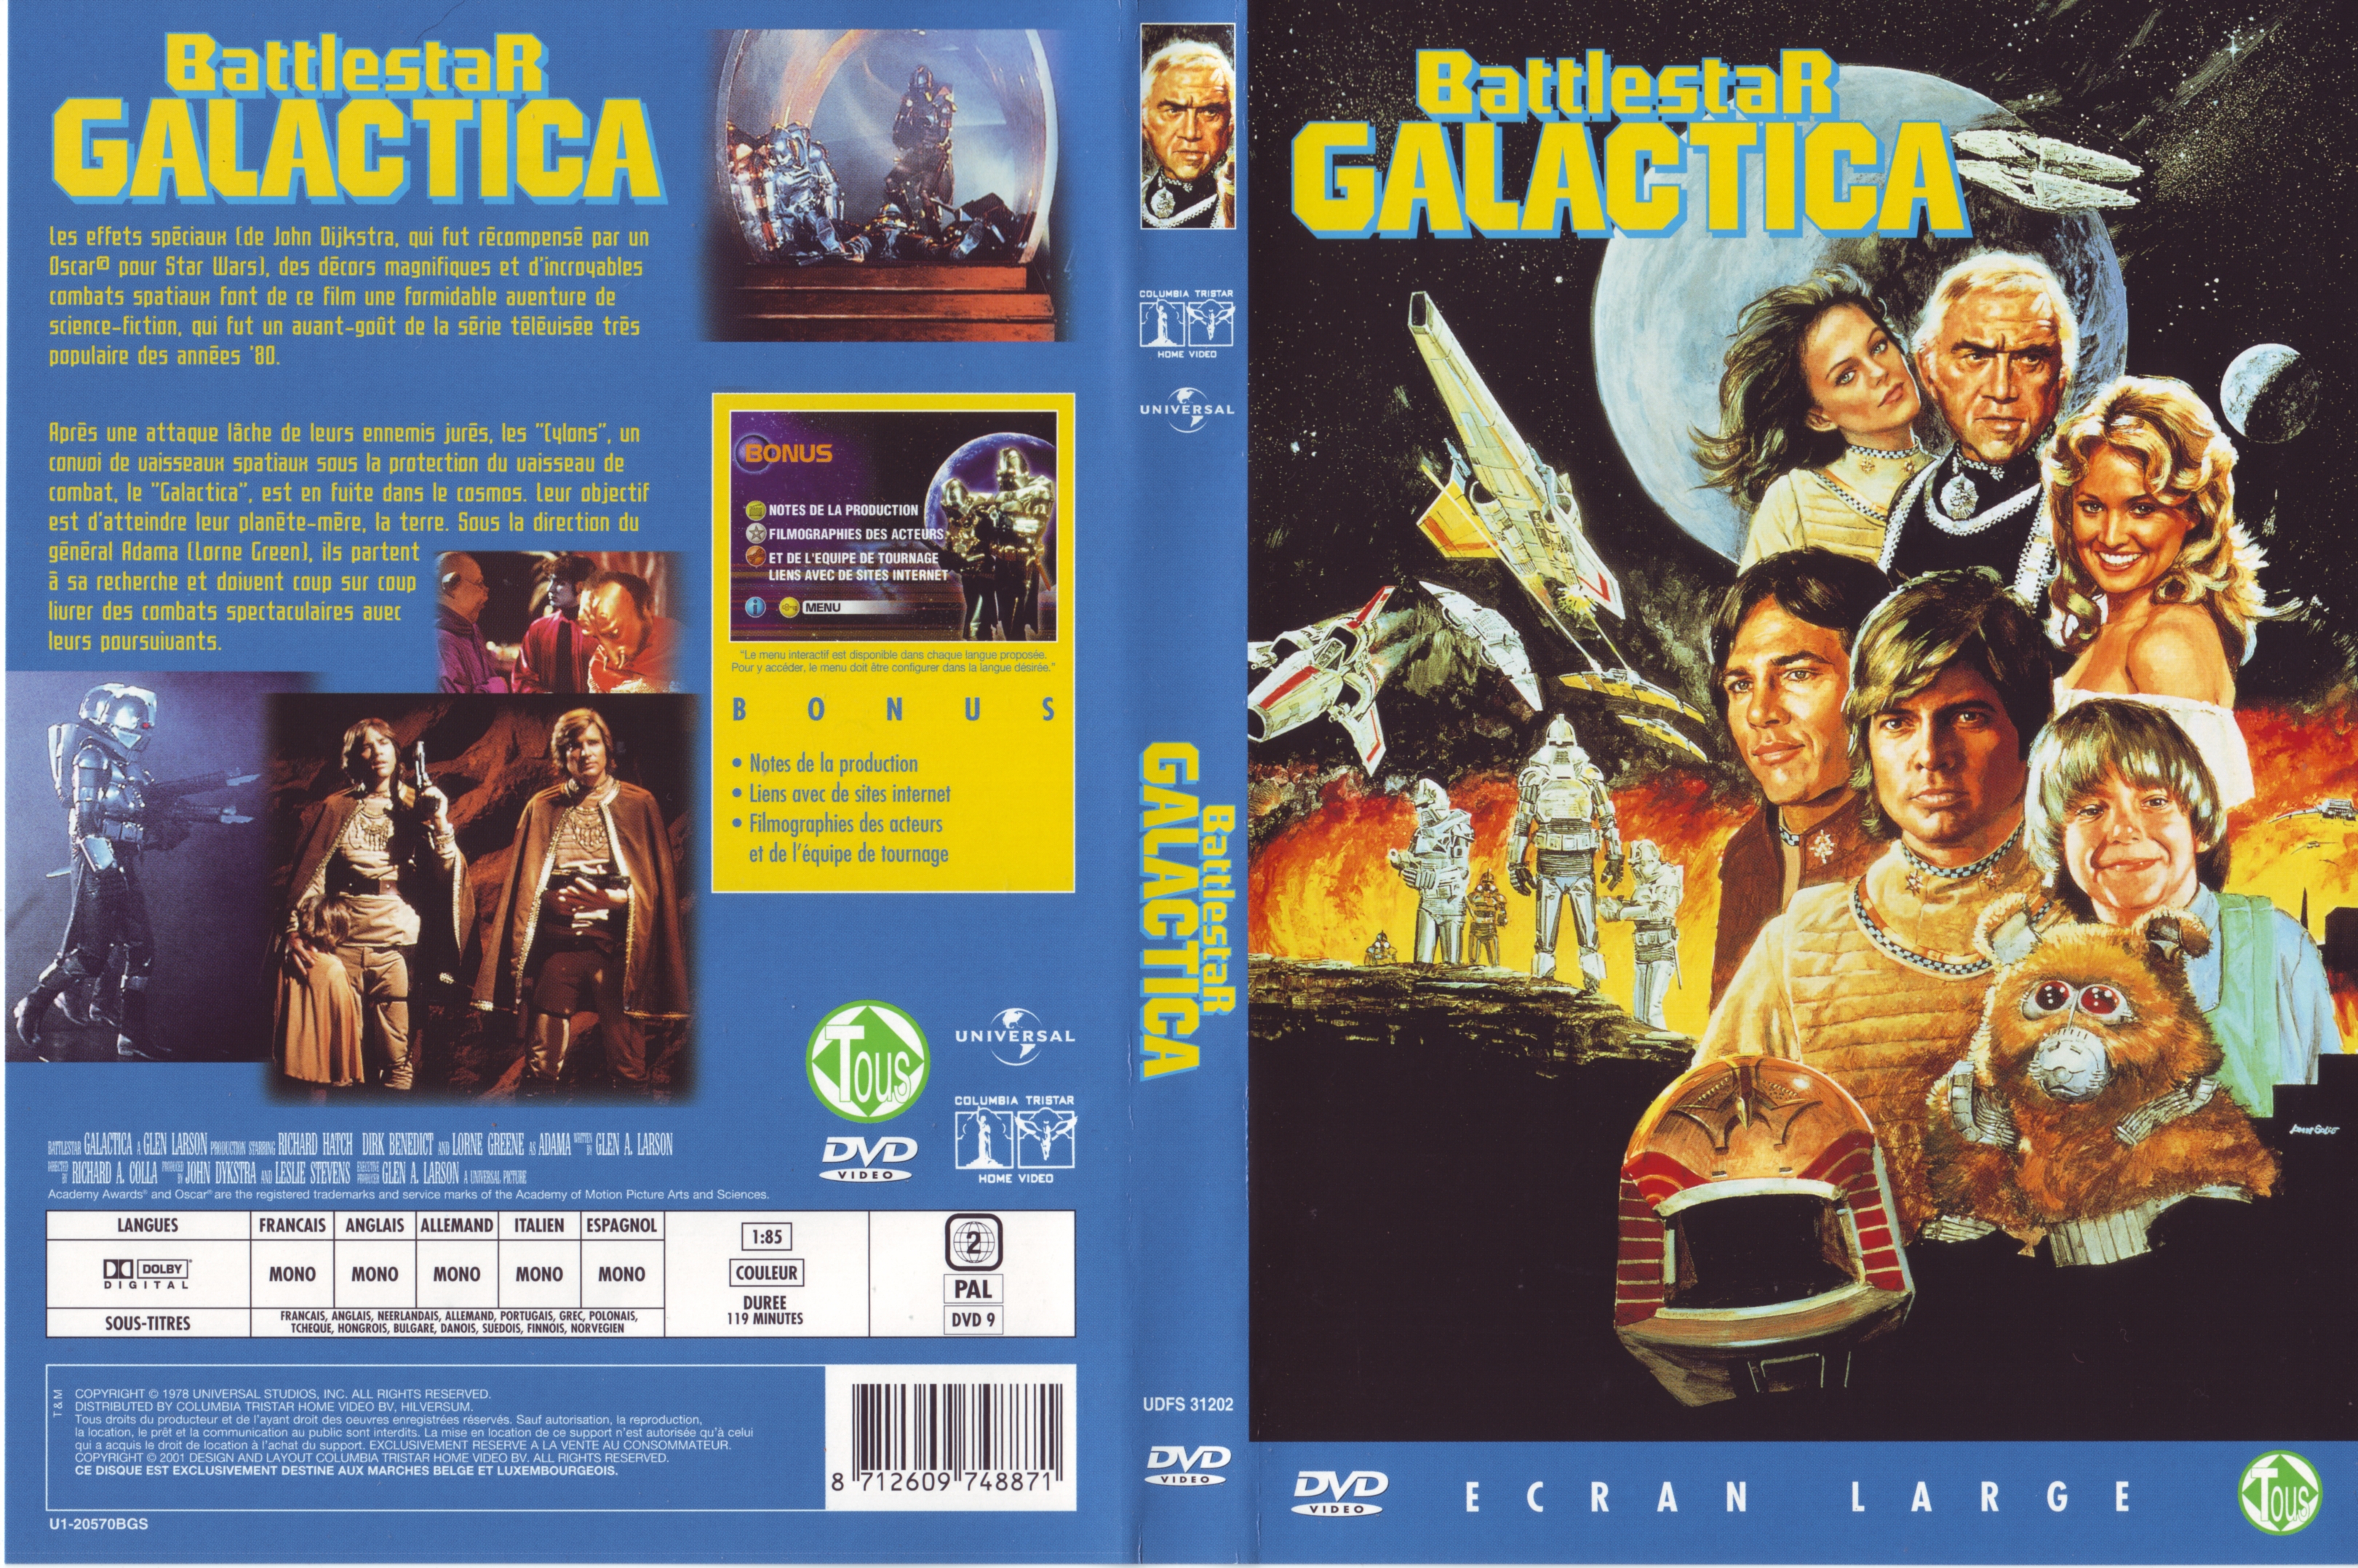 Jaquette DVD Battlestar Galactica (1978)